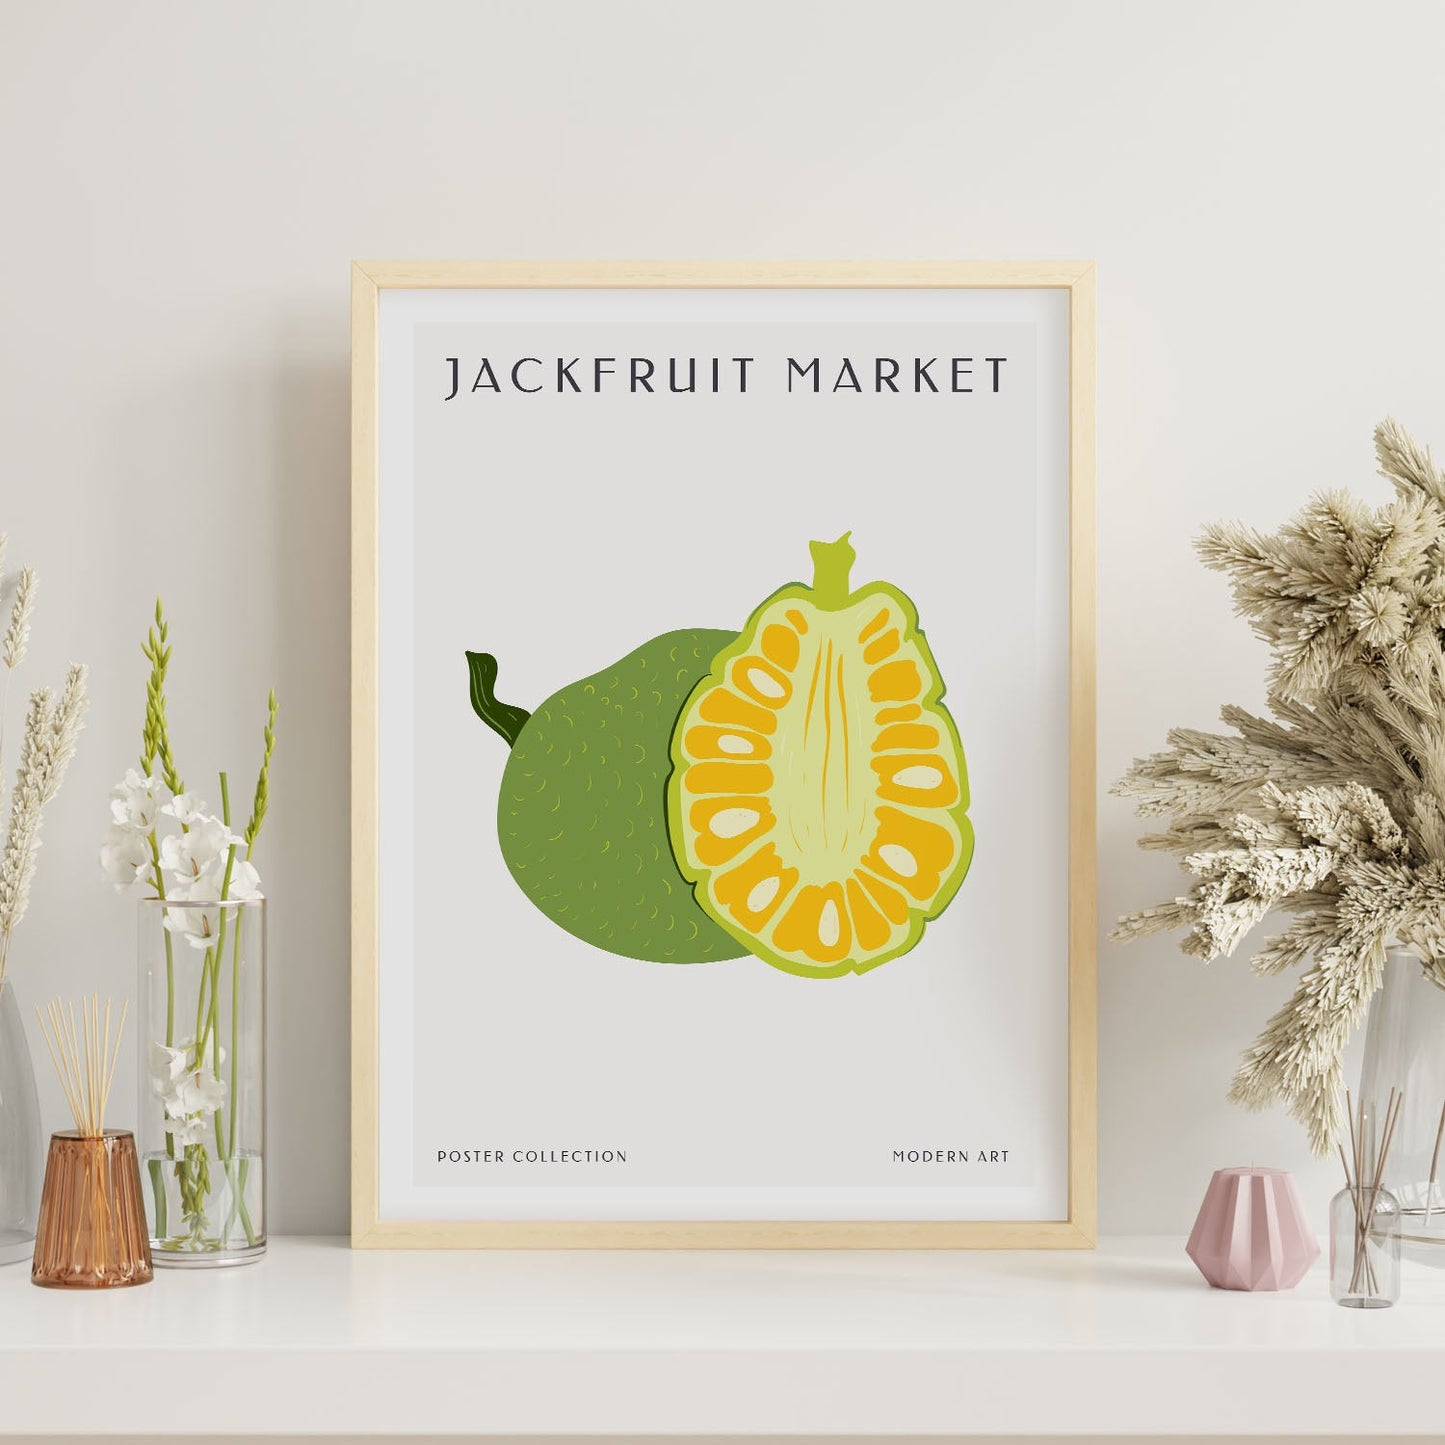 Jackfruit-Artwork-Nacnic-Nacnic Estudio SL